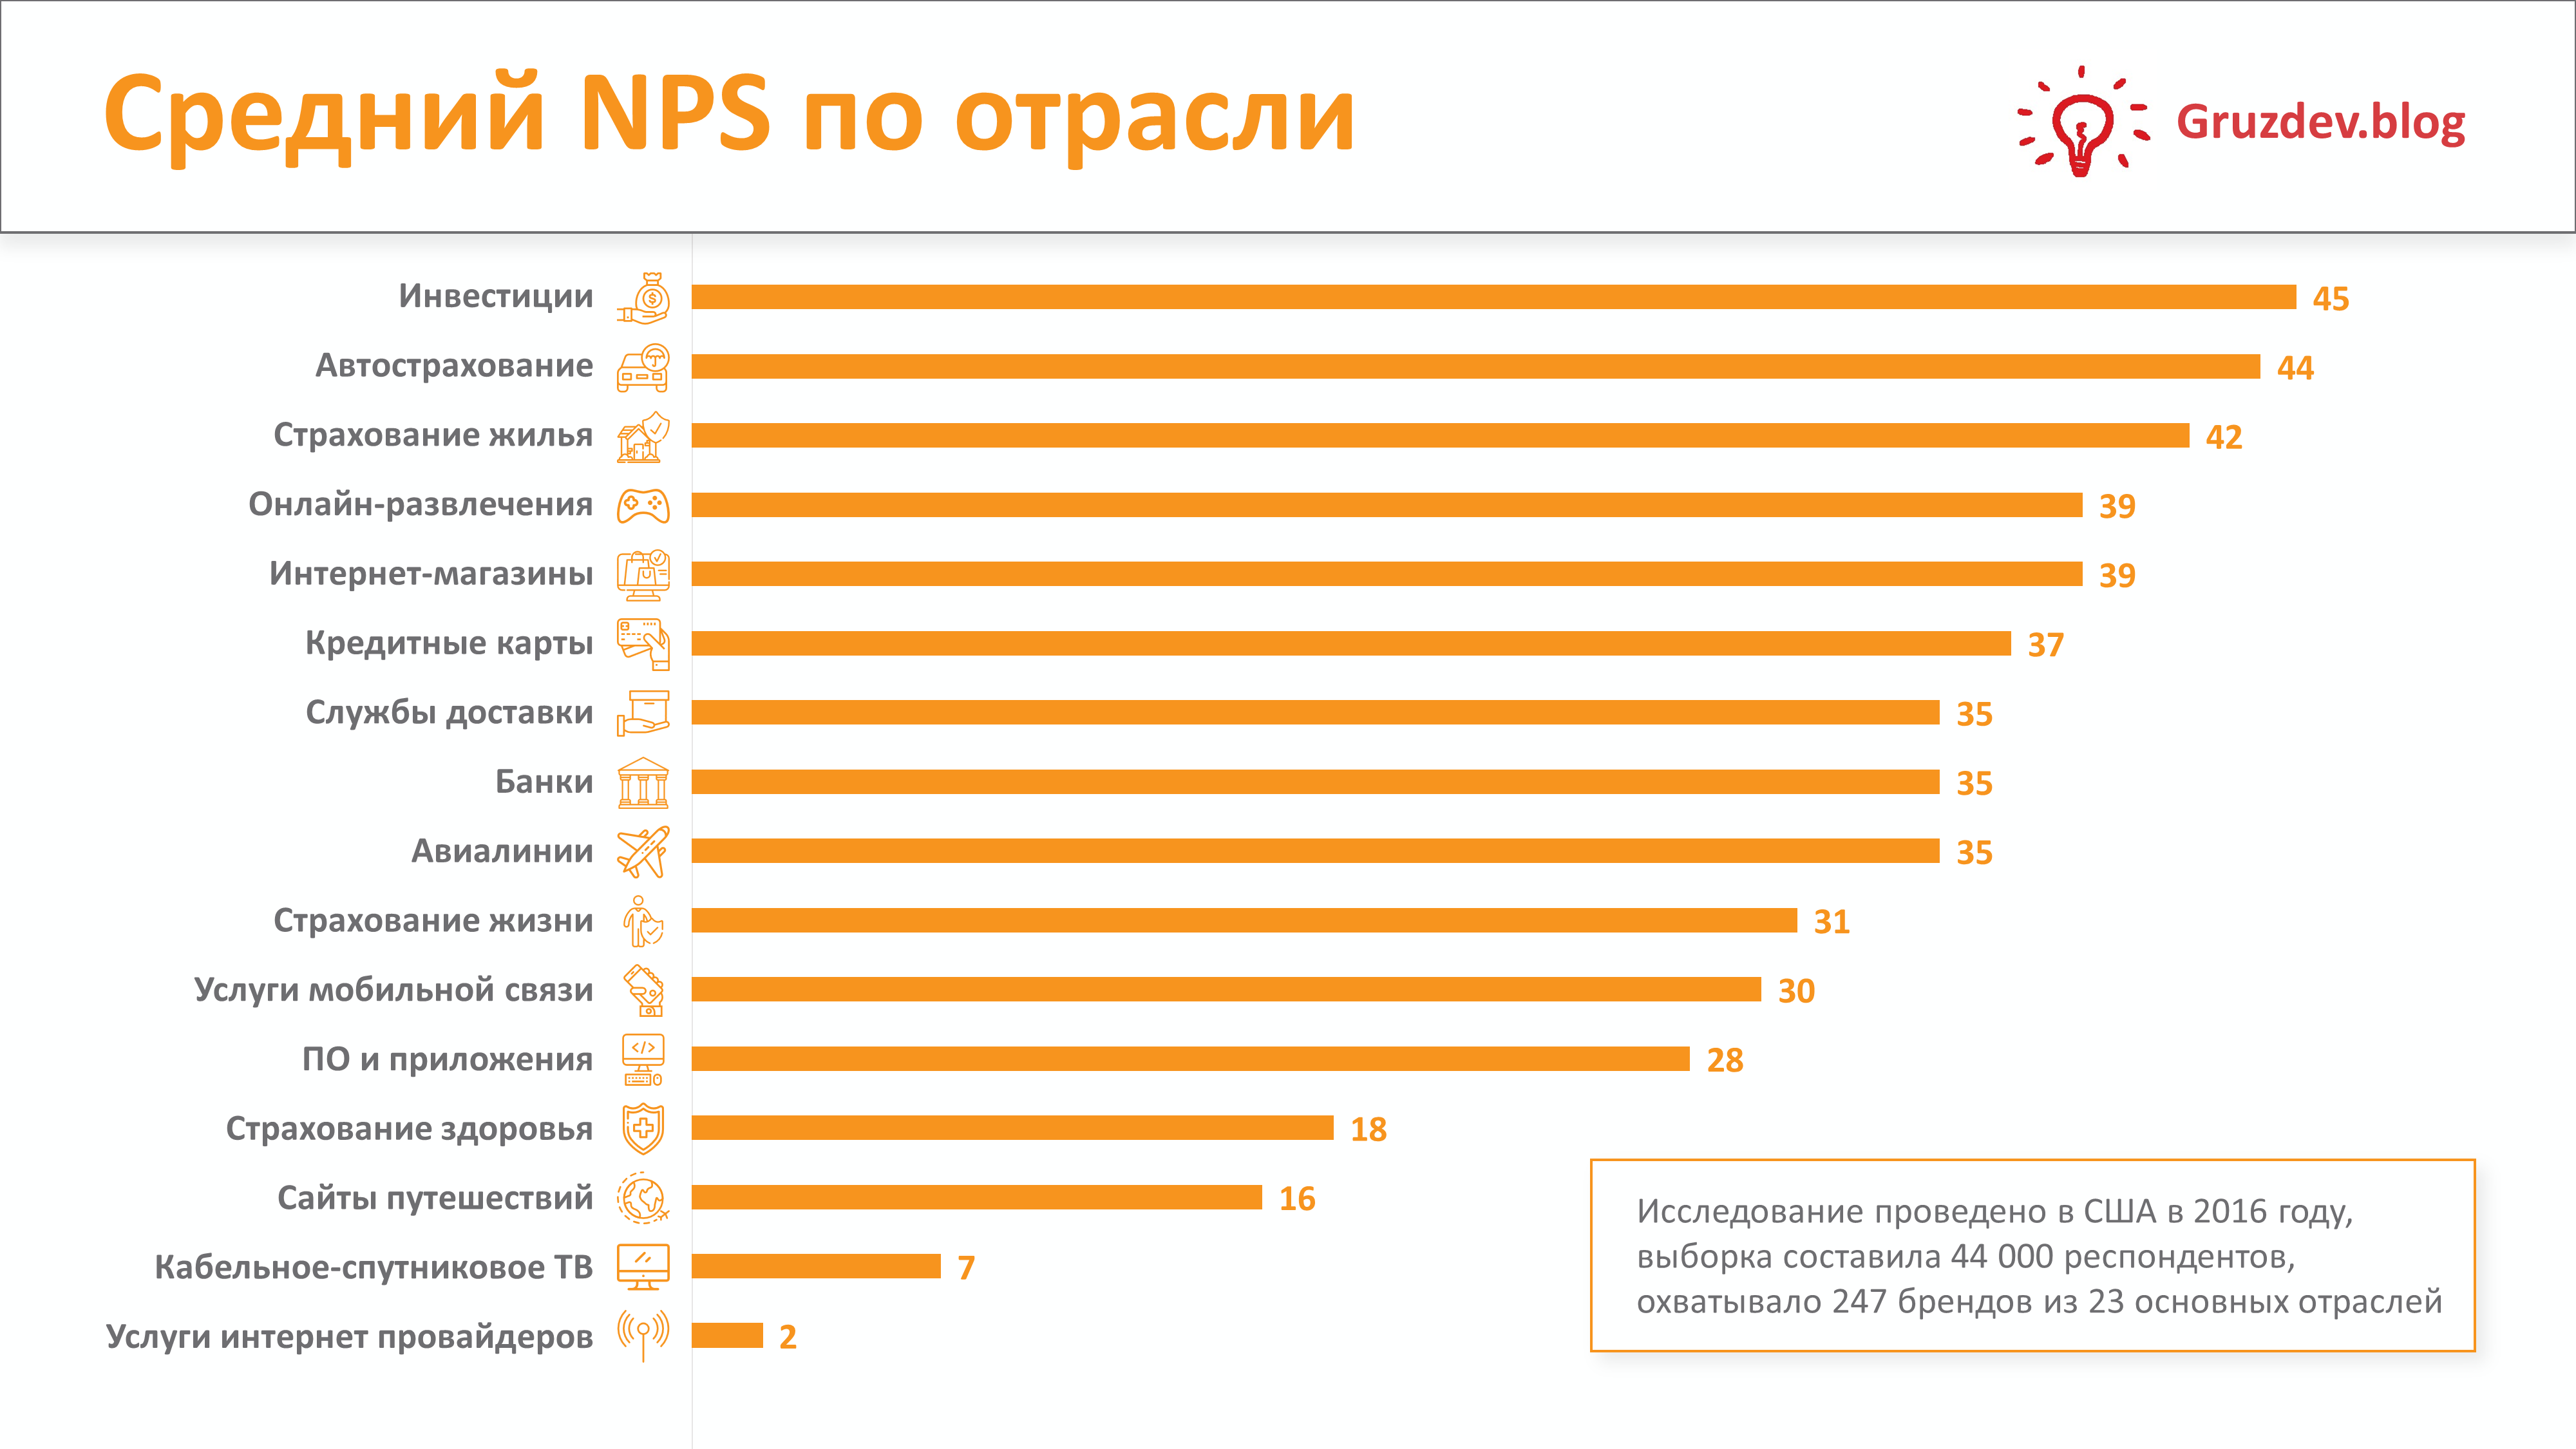 Средняя сайта россии. Индекс потребительской лояльности. Индекс лояльности клиентов. Показатель NPS. Средний показатель по отрасли.